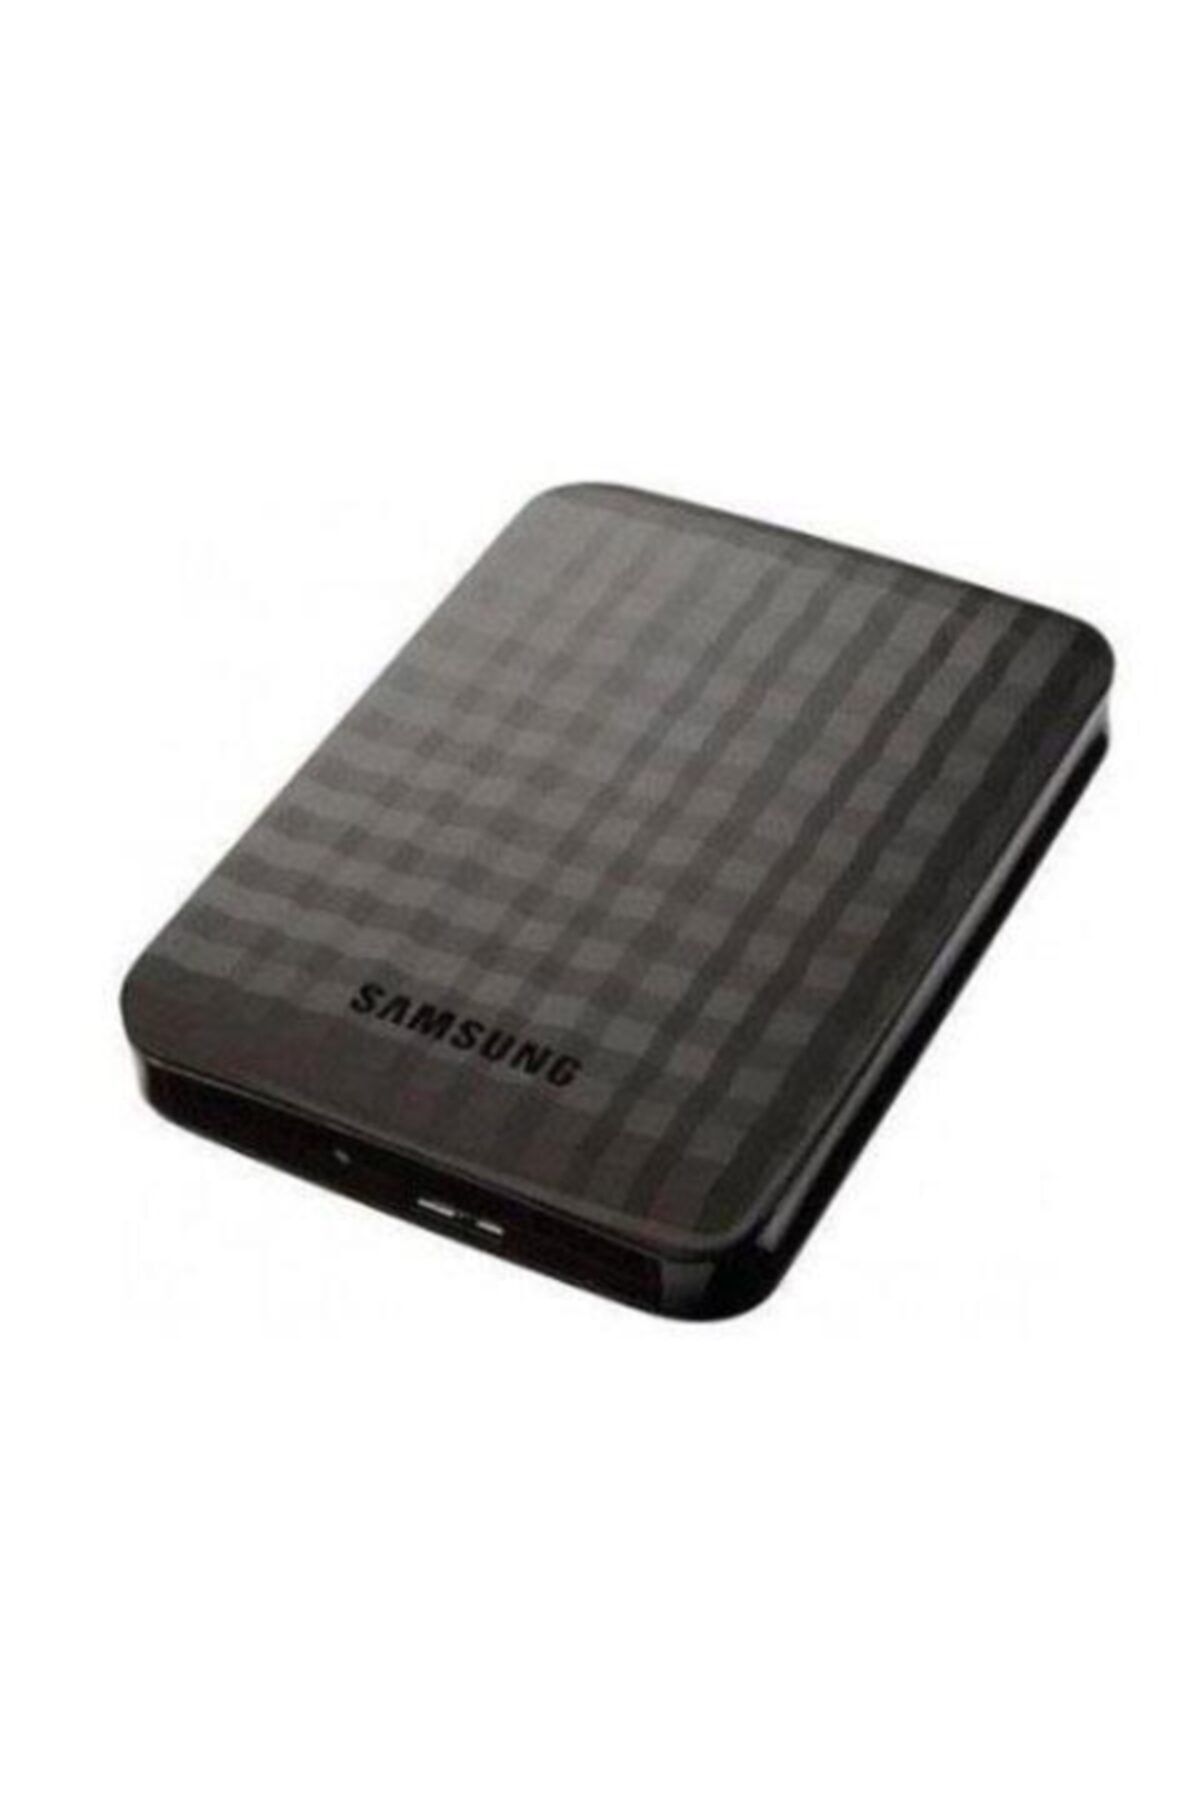 Samsung M3 Portable 500 Gb Stshx-m500tcb 2.5" Usb 3.0 Taşınabilir Disk